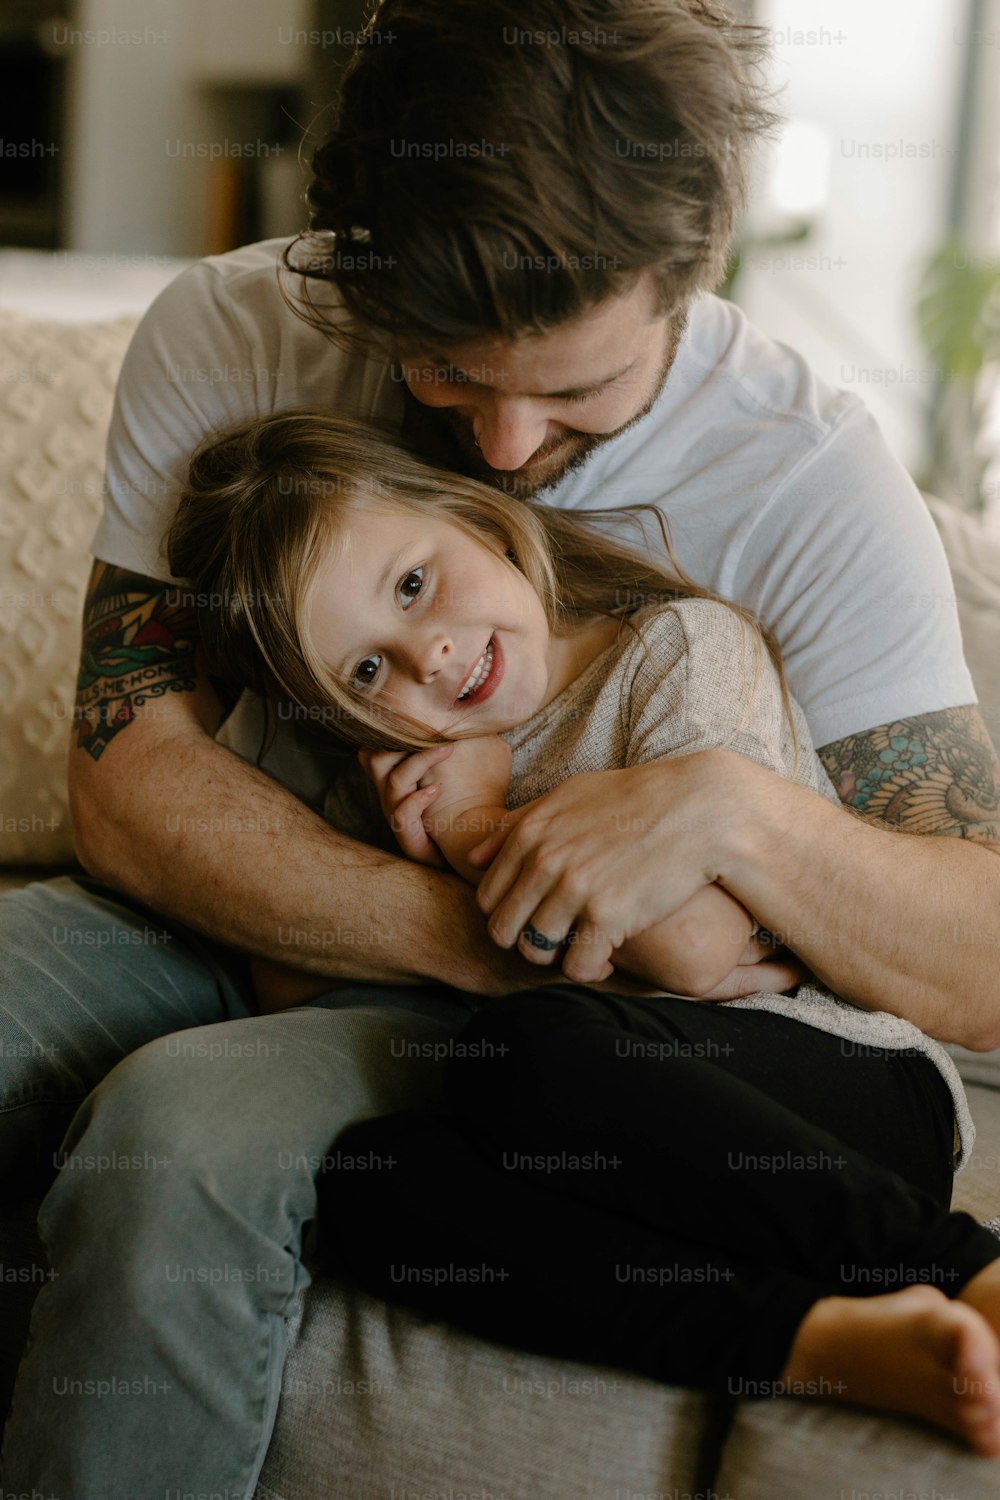 Un uomo che abbraccia una bambina in cima a un divano